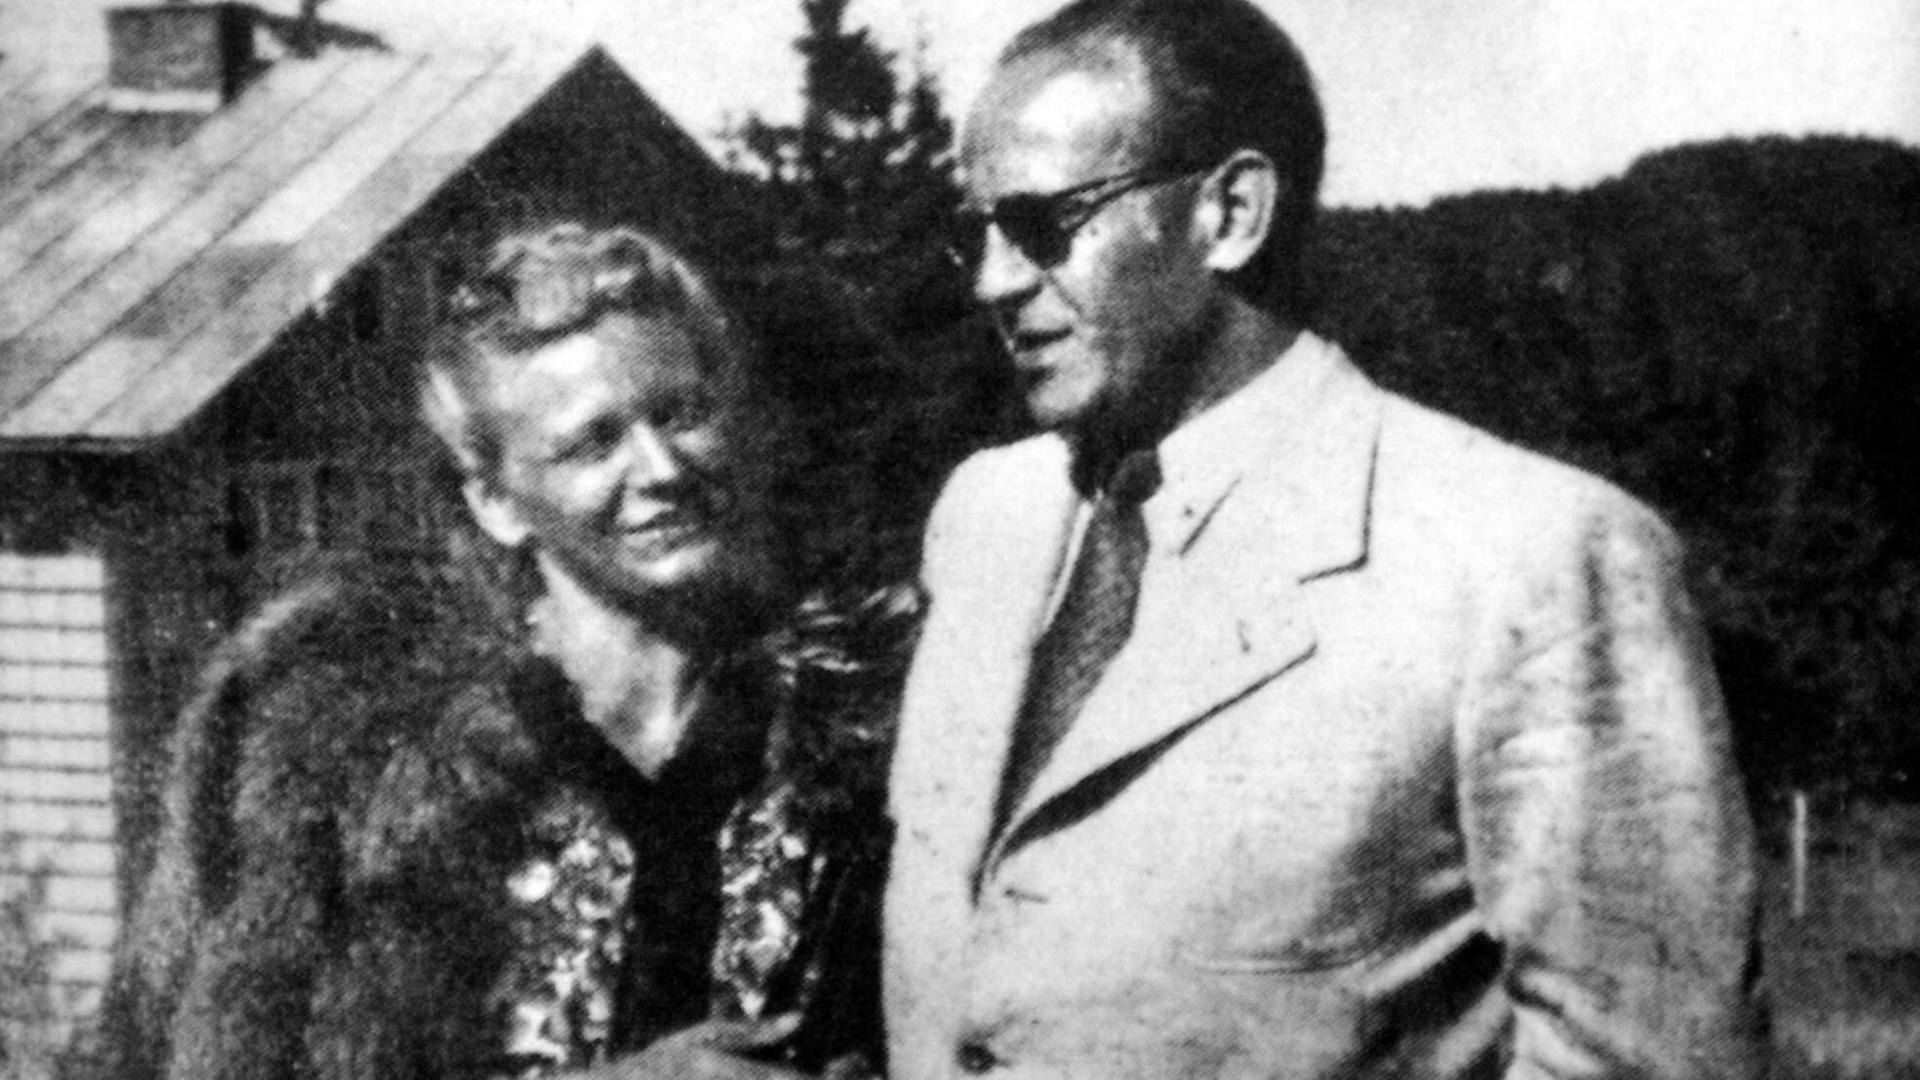 Die Reproduktion eines historischen Schwarzweiß-Fotos zeigt das Ehepaar Oskar und Emilie Schindler.
